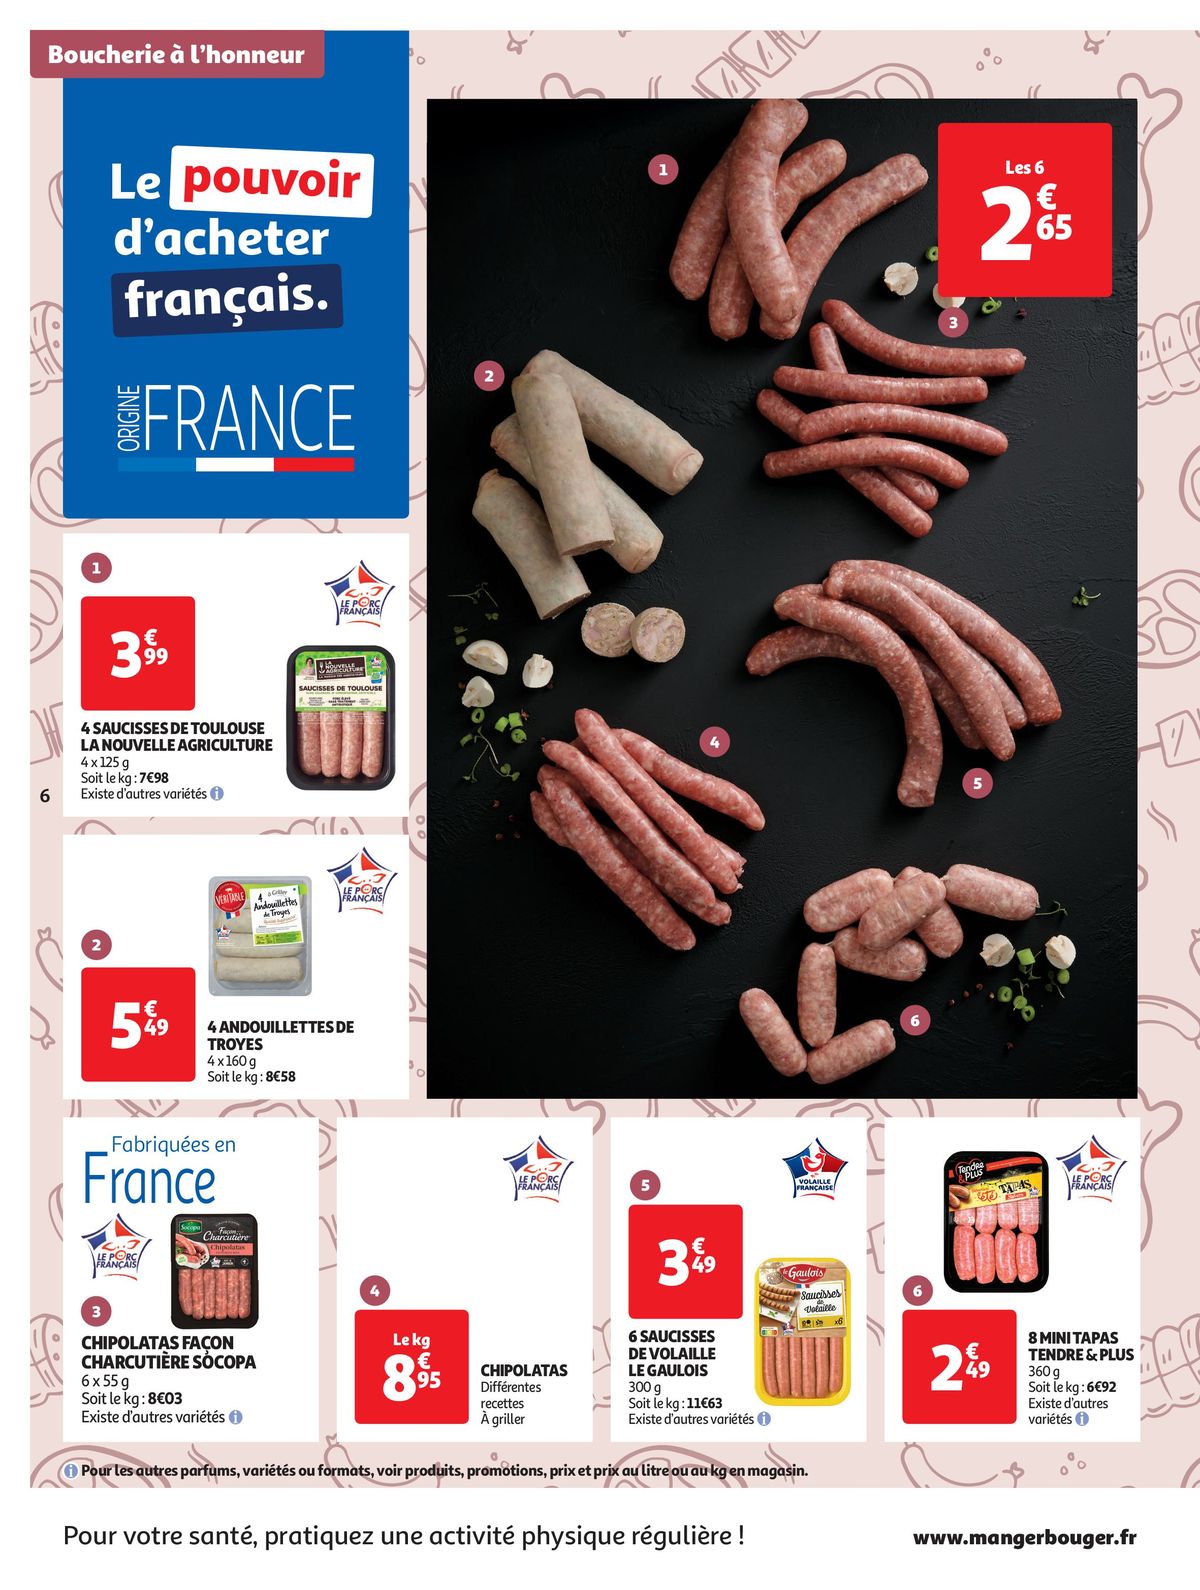 Catalogue Les Halles d'Auchan dans votre Super, page 00006